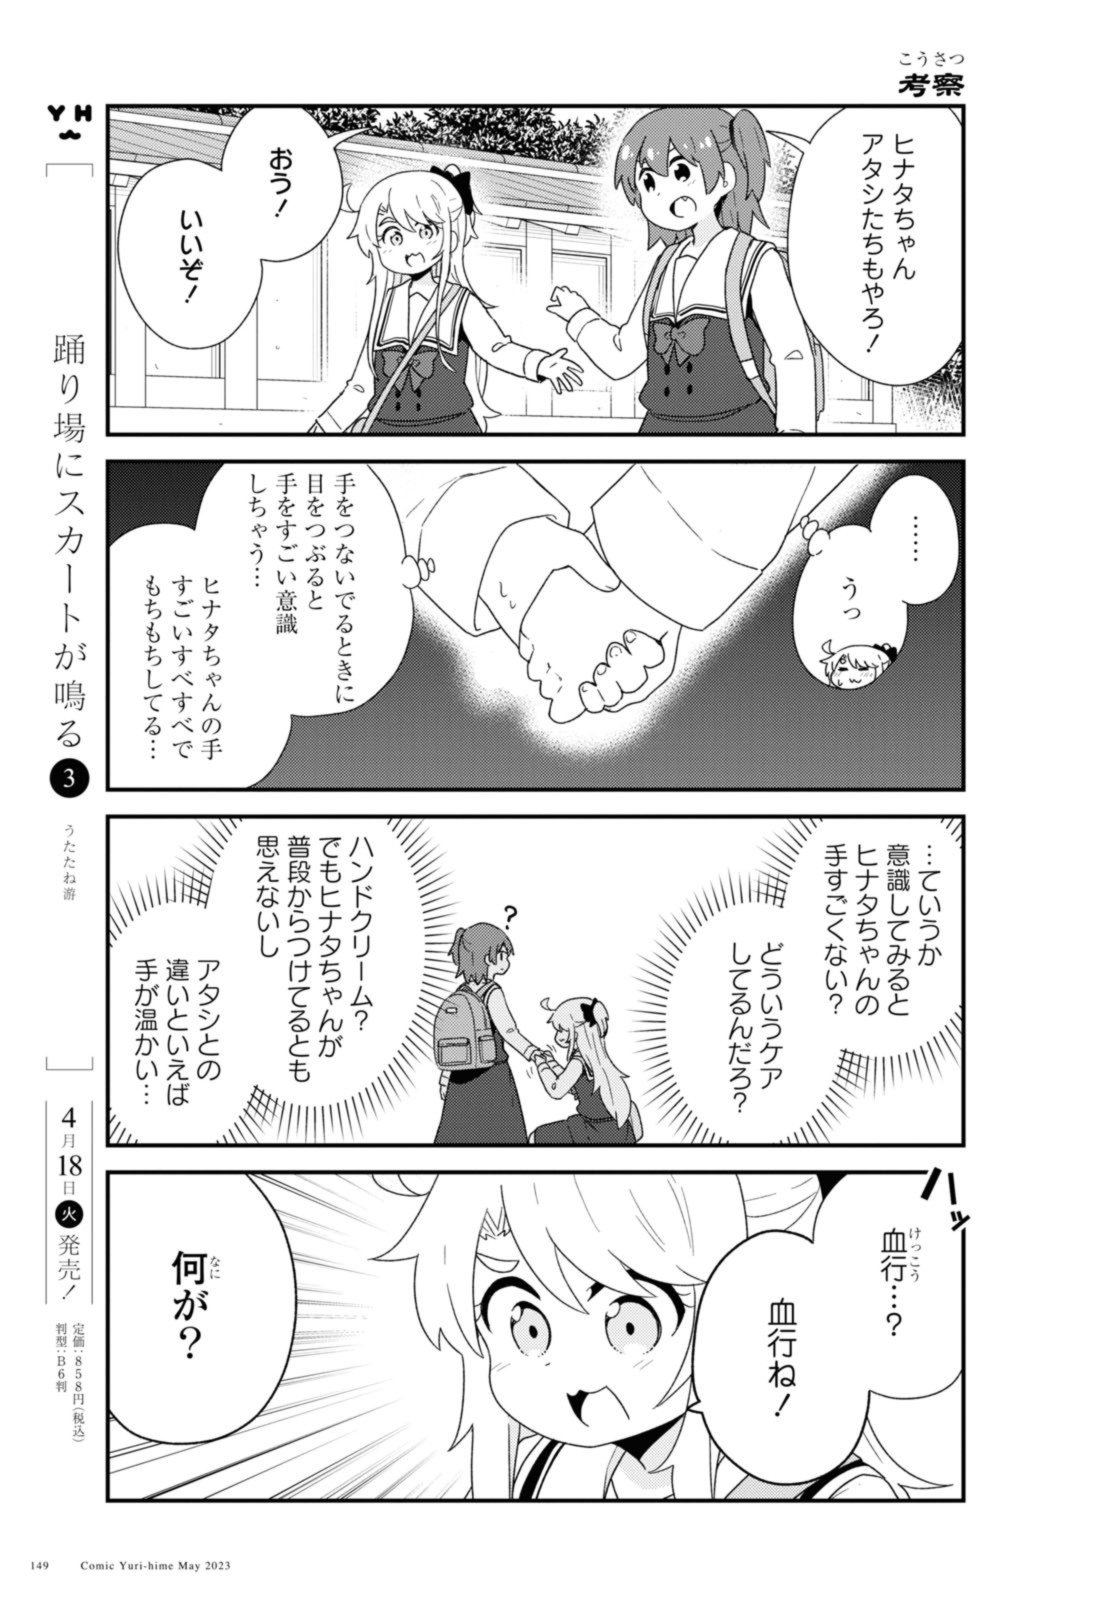 Watashi ni Tenshi ga Maiorita! - Chapter 105 - Page 11